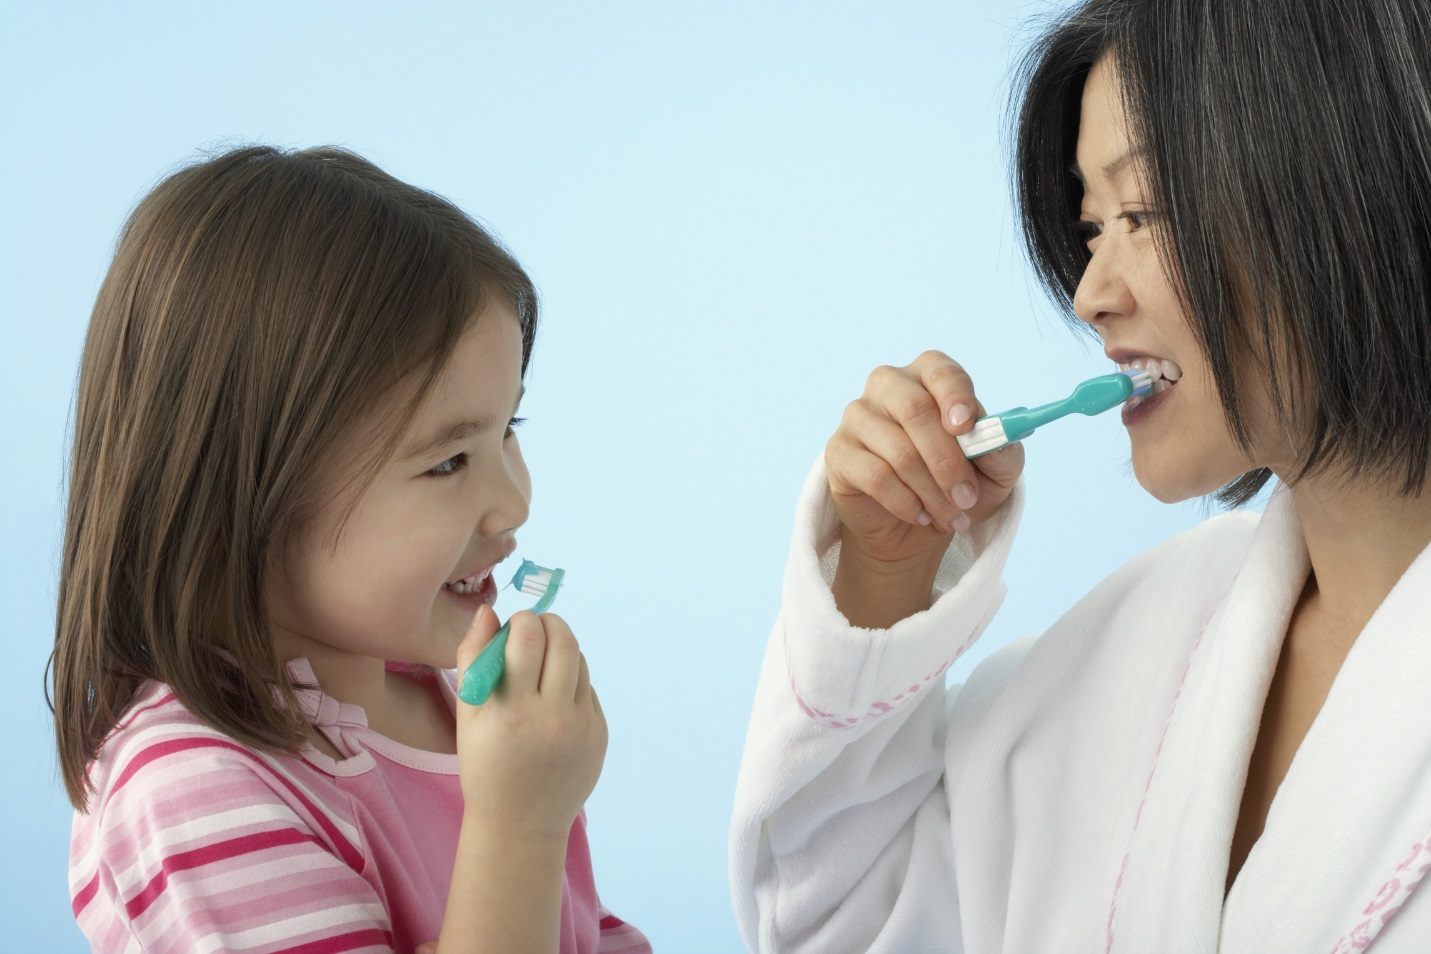 Cha mẹ có nên nhổ răng sữa tại nhà cho trẻ: Đây là câu trả lời của bác sĩ nha khoa - Ảnh 3